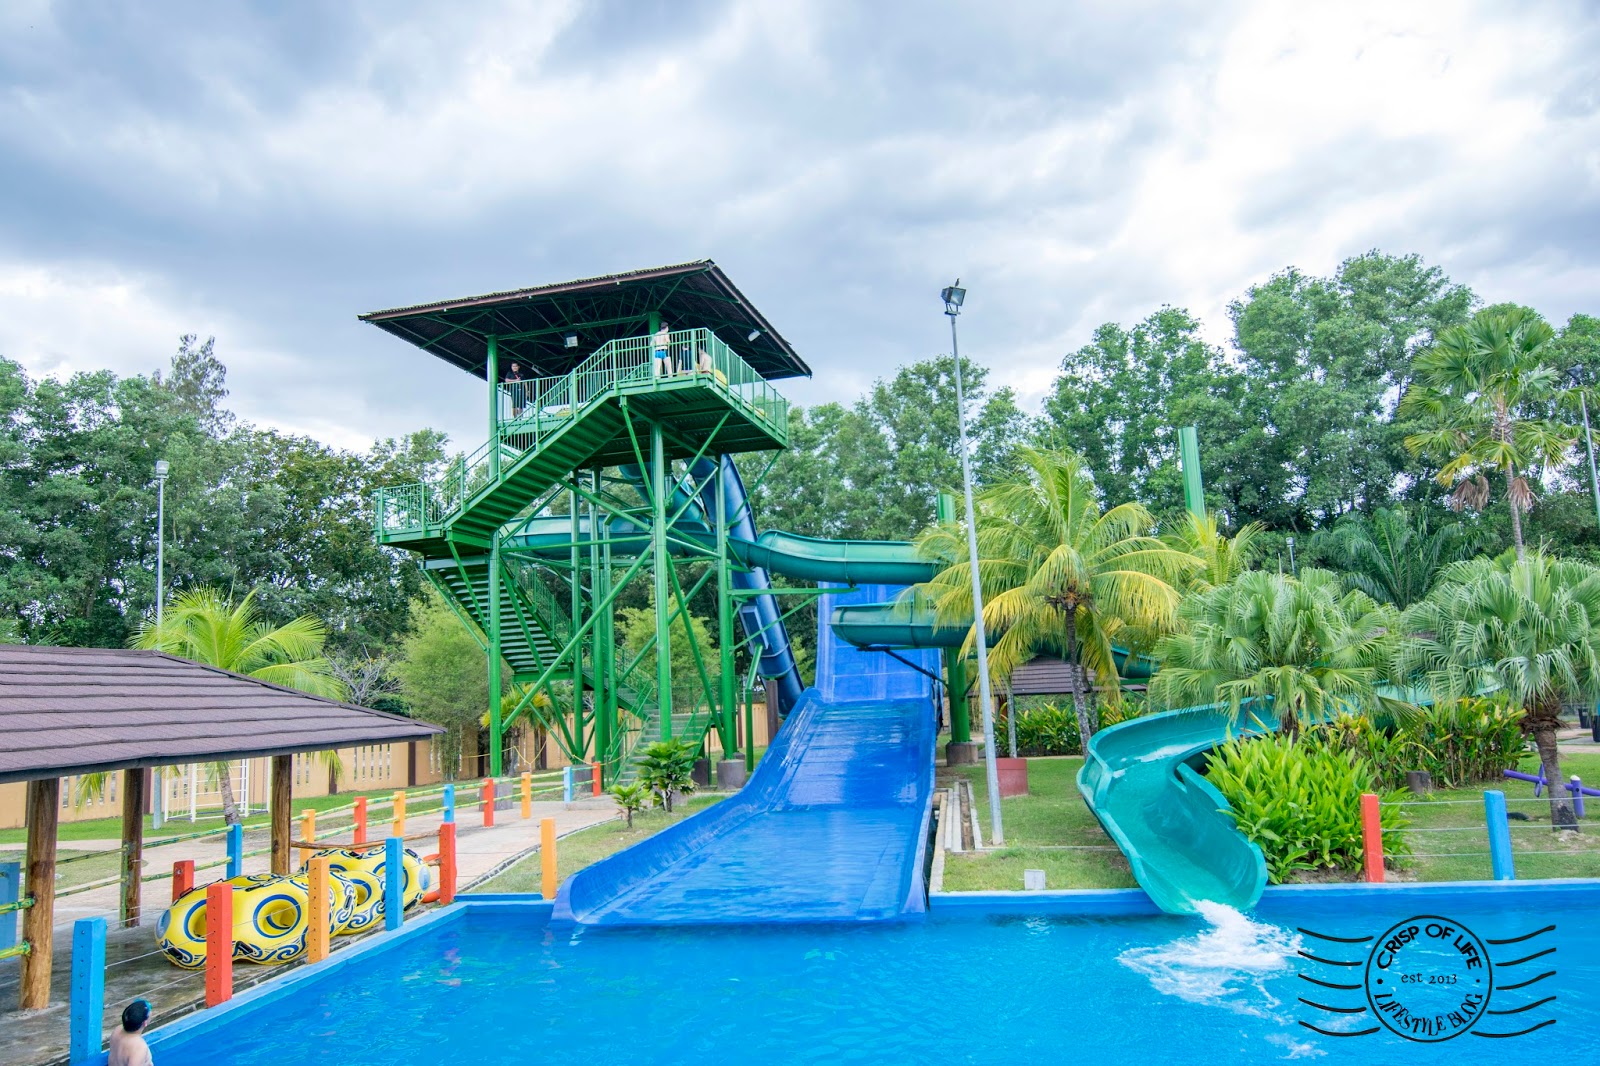 The Carnivall Waterpark @ Sungai Petani, Kedah - Crisp of Life